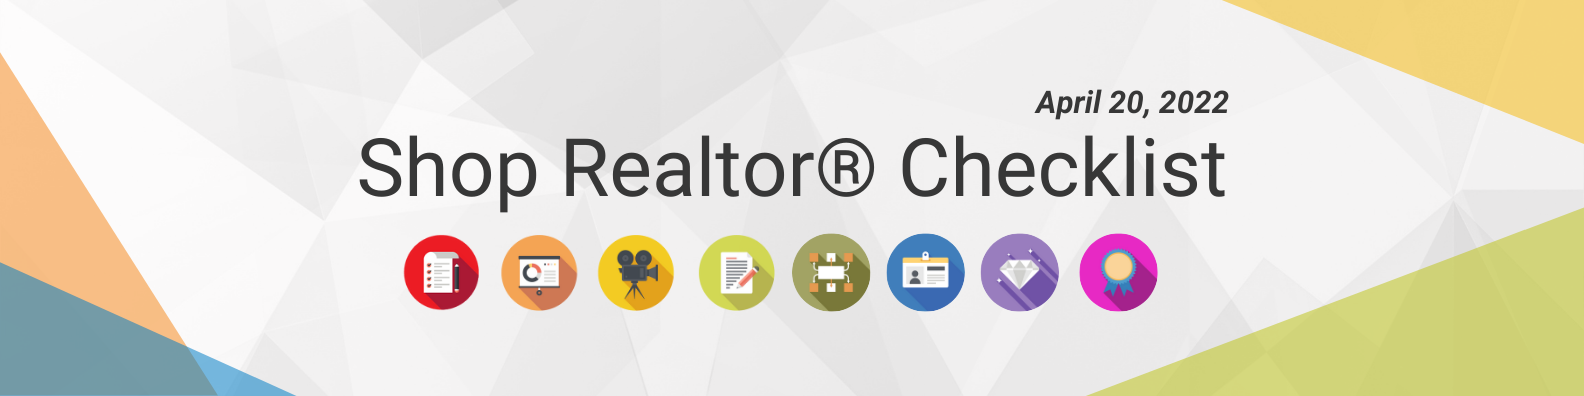 Shop Realtor® Checklist (9)